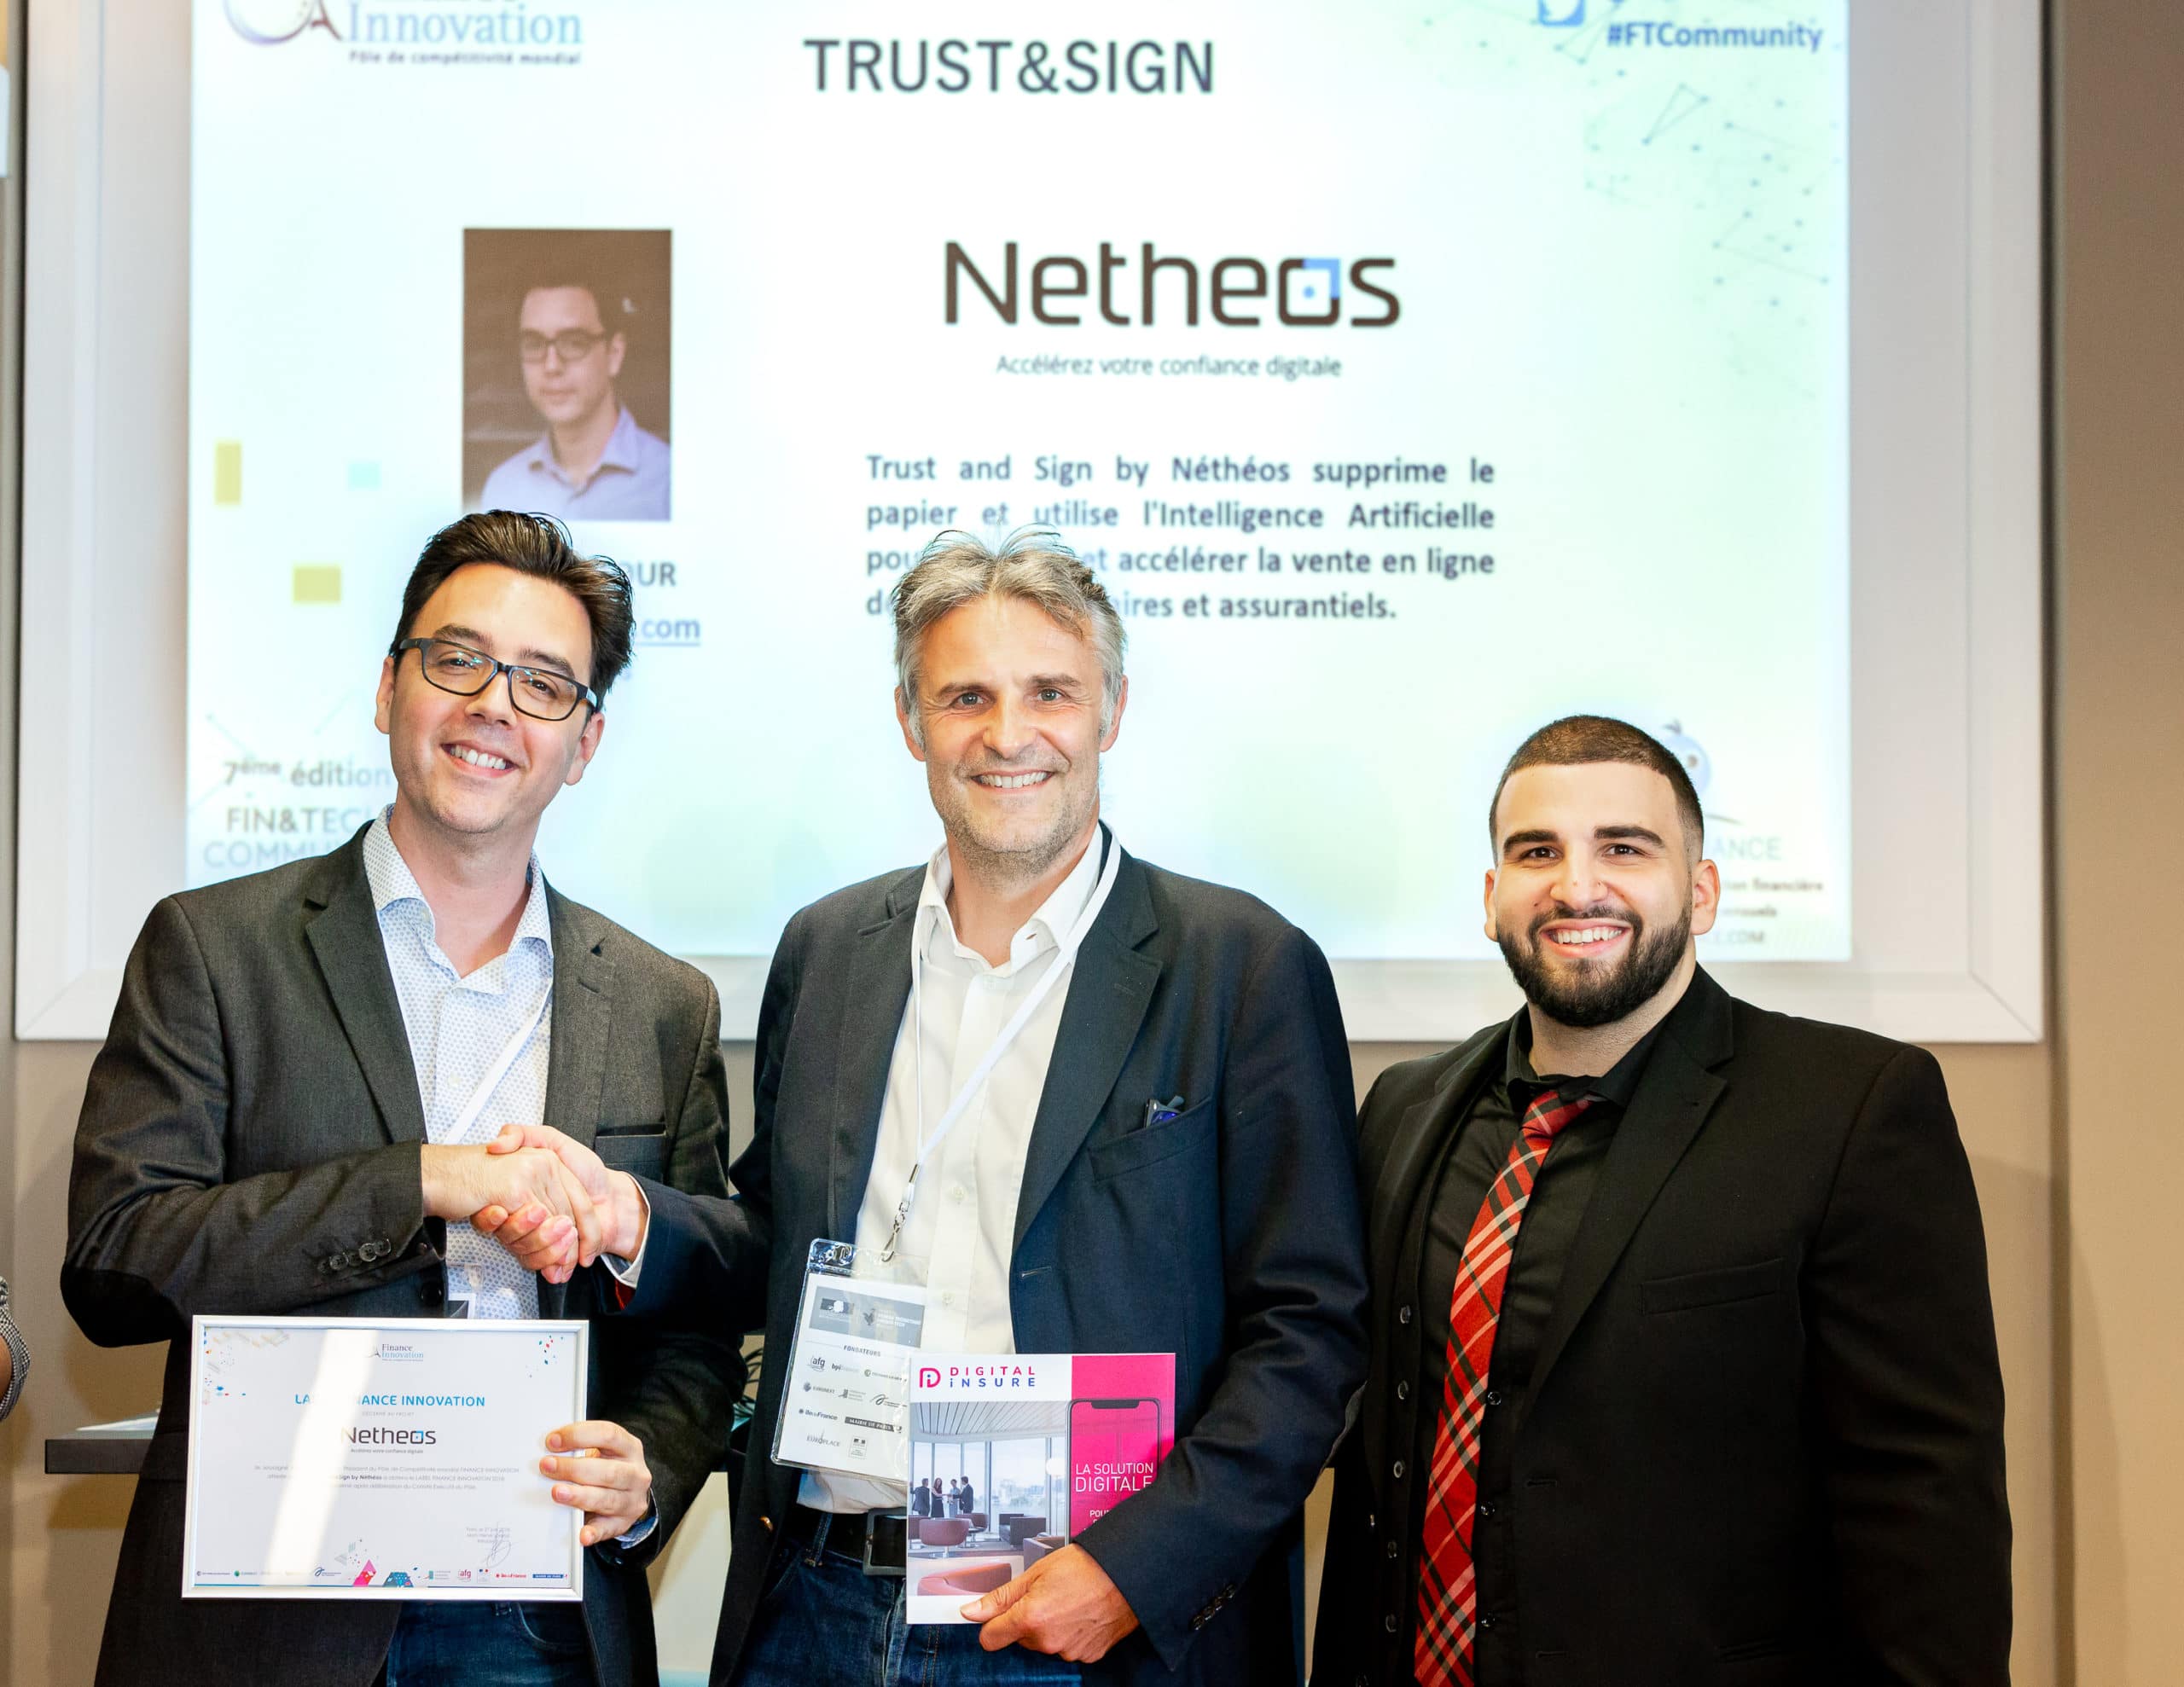 Trofeo assicurativo con marchio innovazione di Netheos Banque